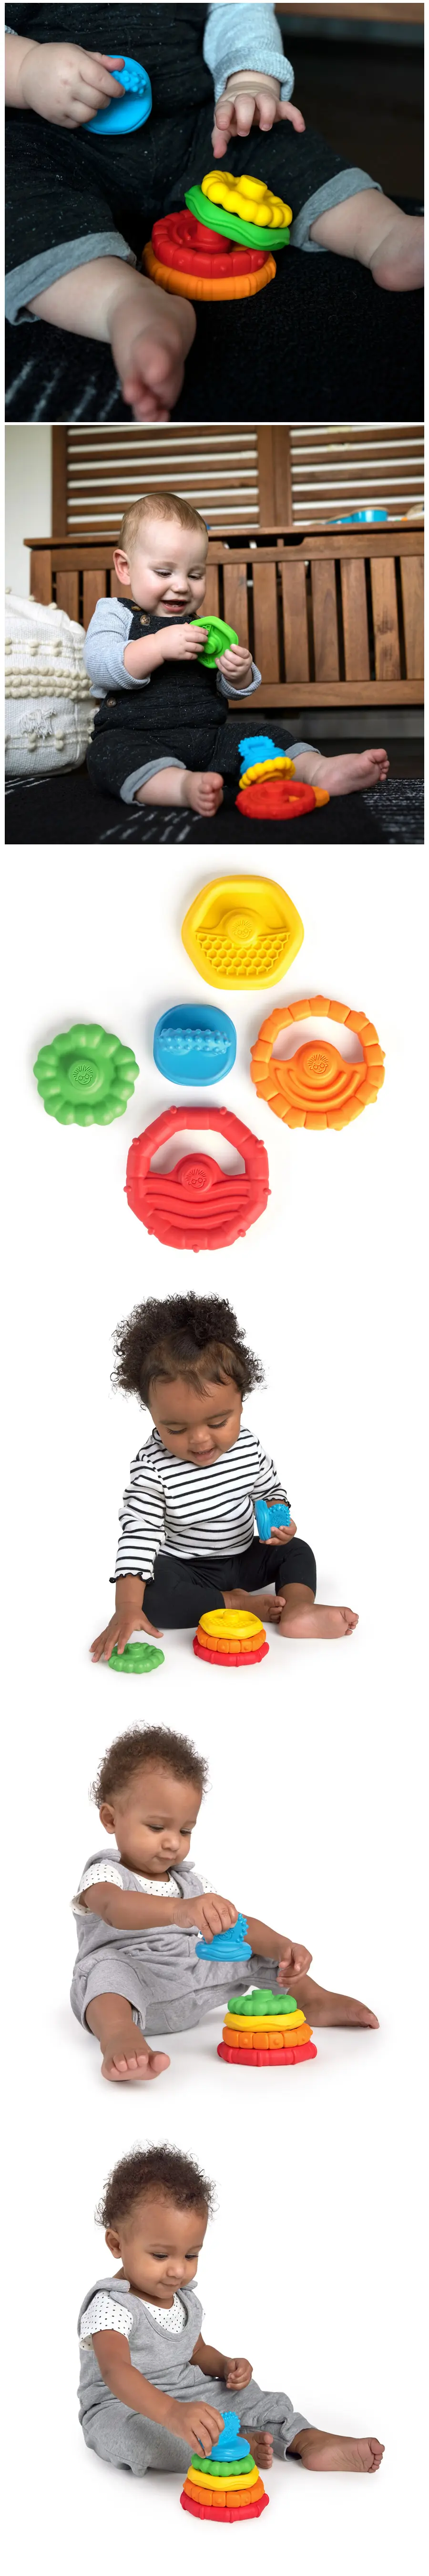 Baby Einstein 多重质感堆叠及牙胶玩具